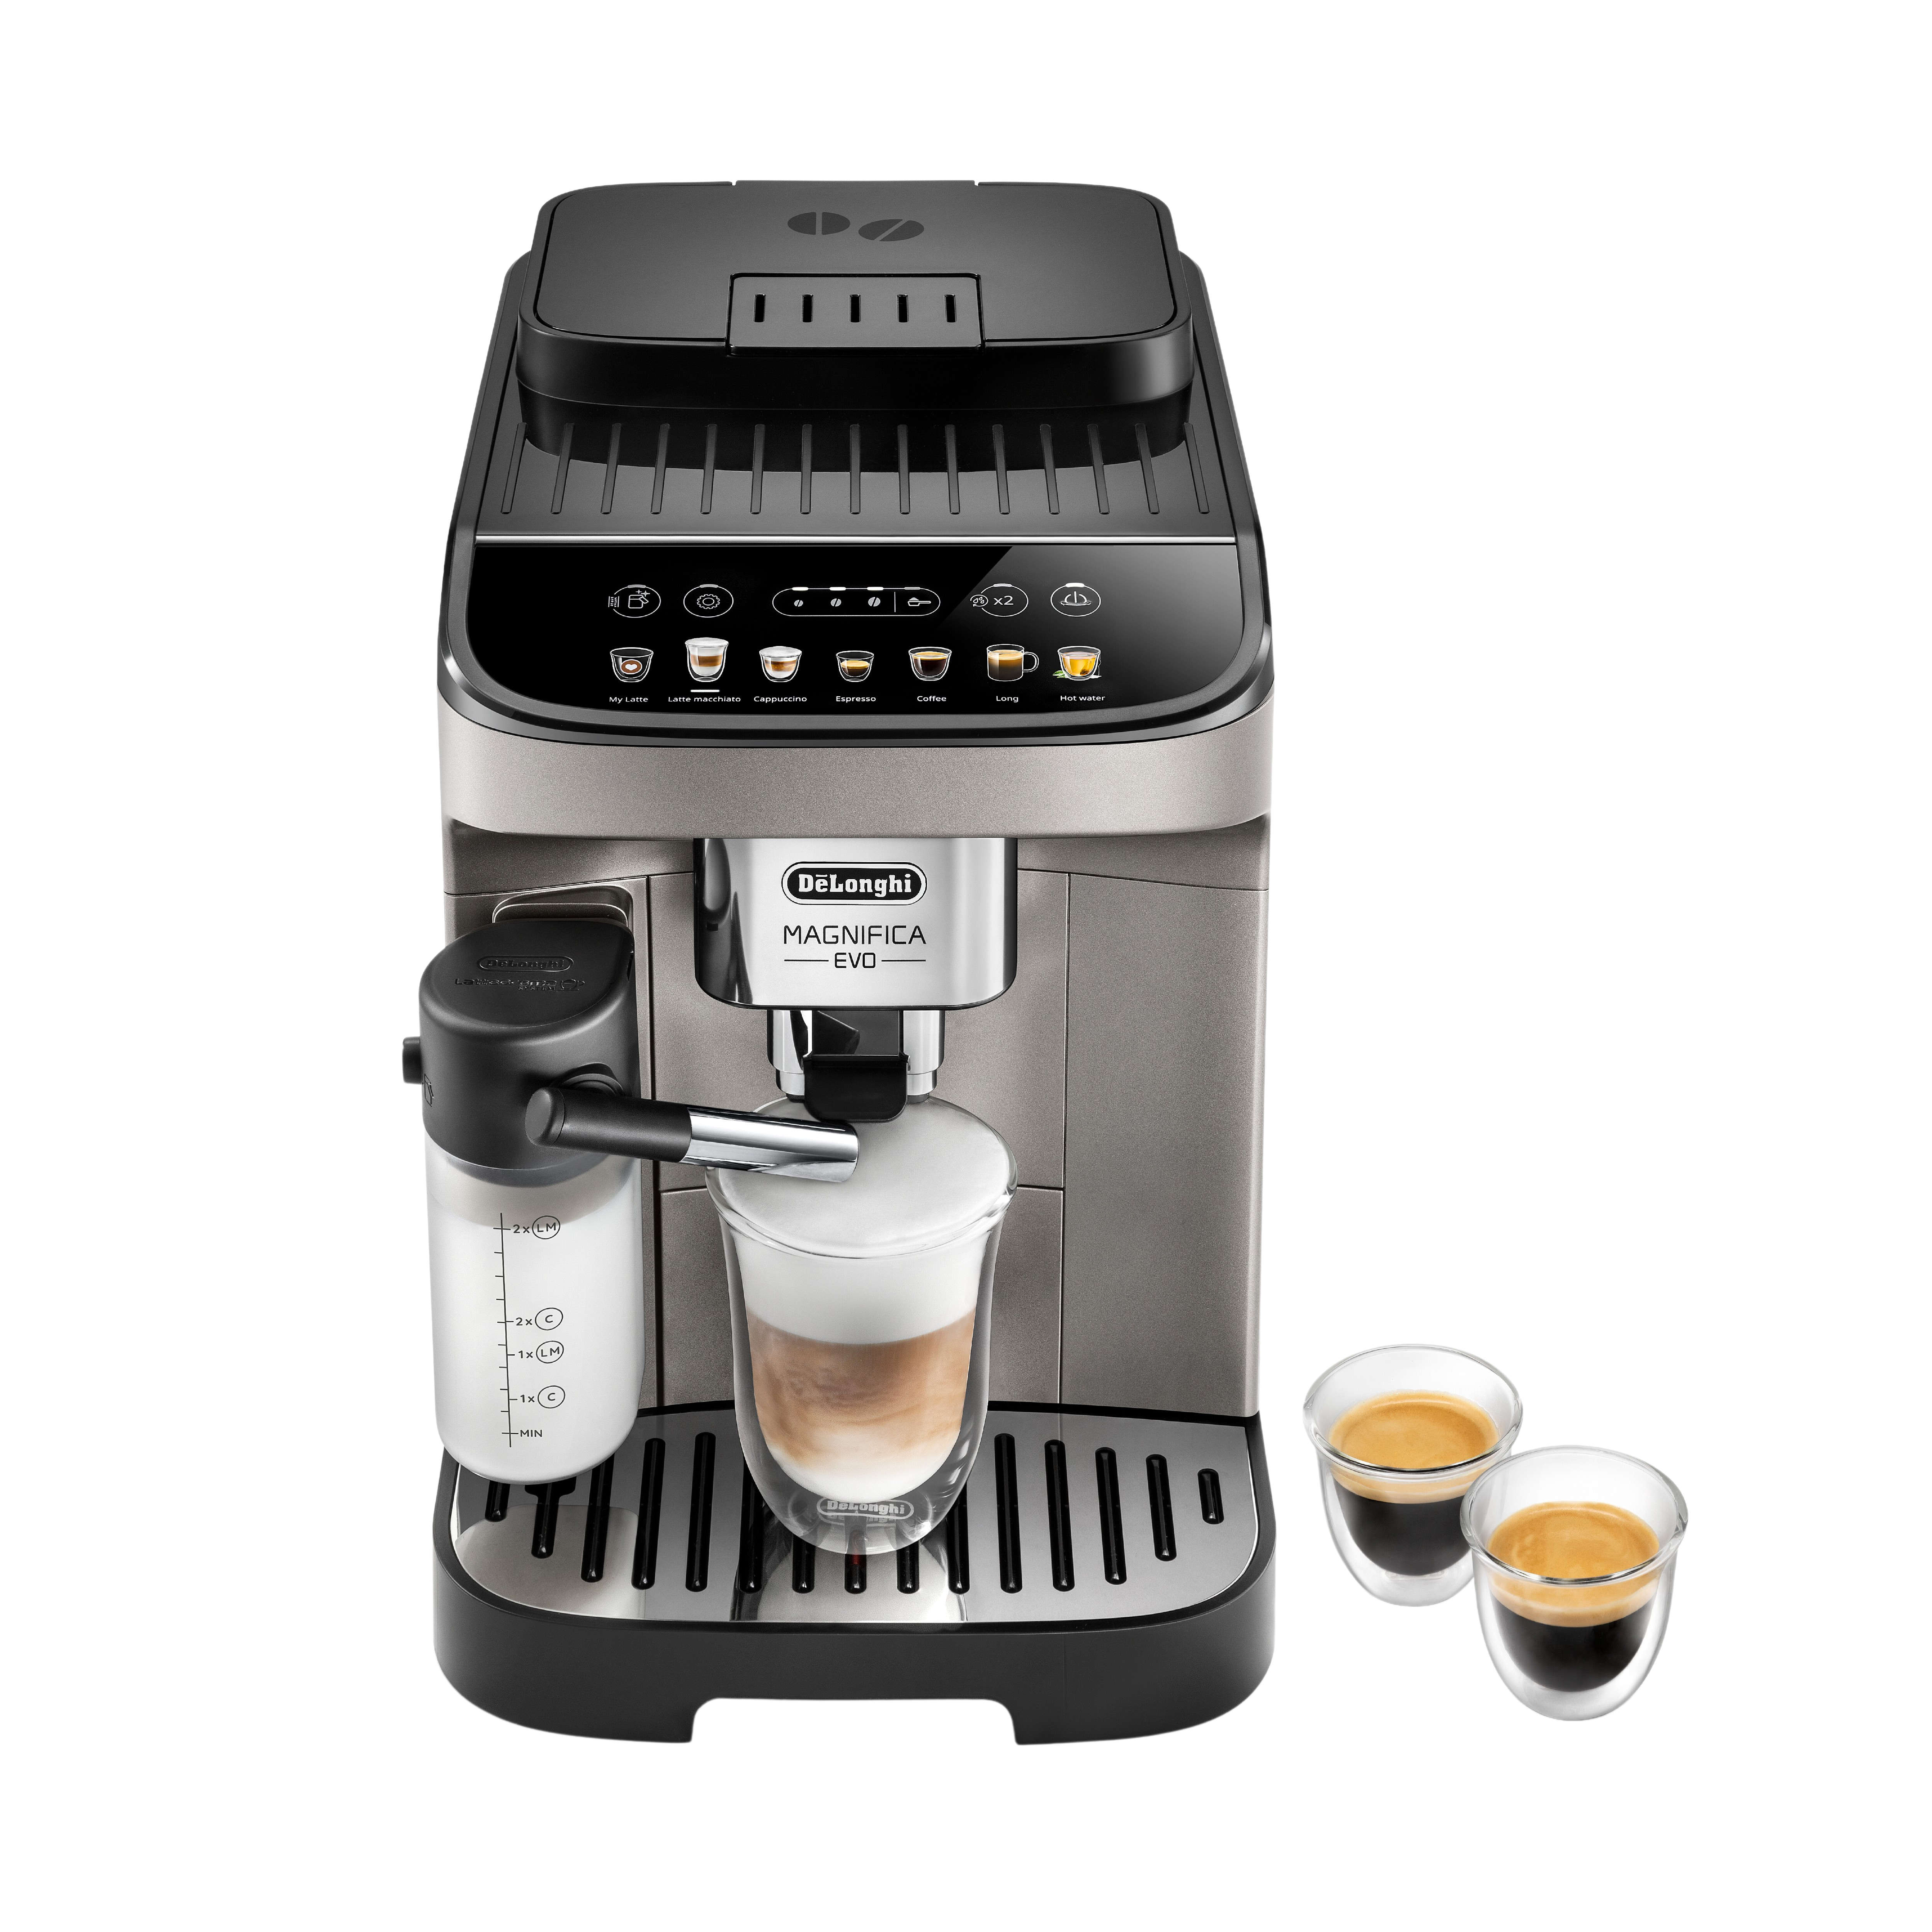 Máquina de café espresso súper automática Delonghi con un molinillo  ajustable, doble caldera, espumador de leche para preparar espresso,  capuchino